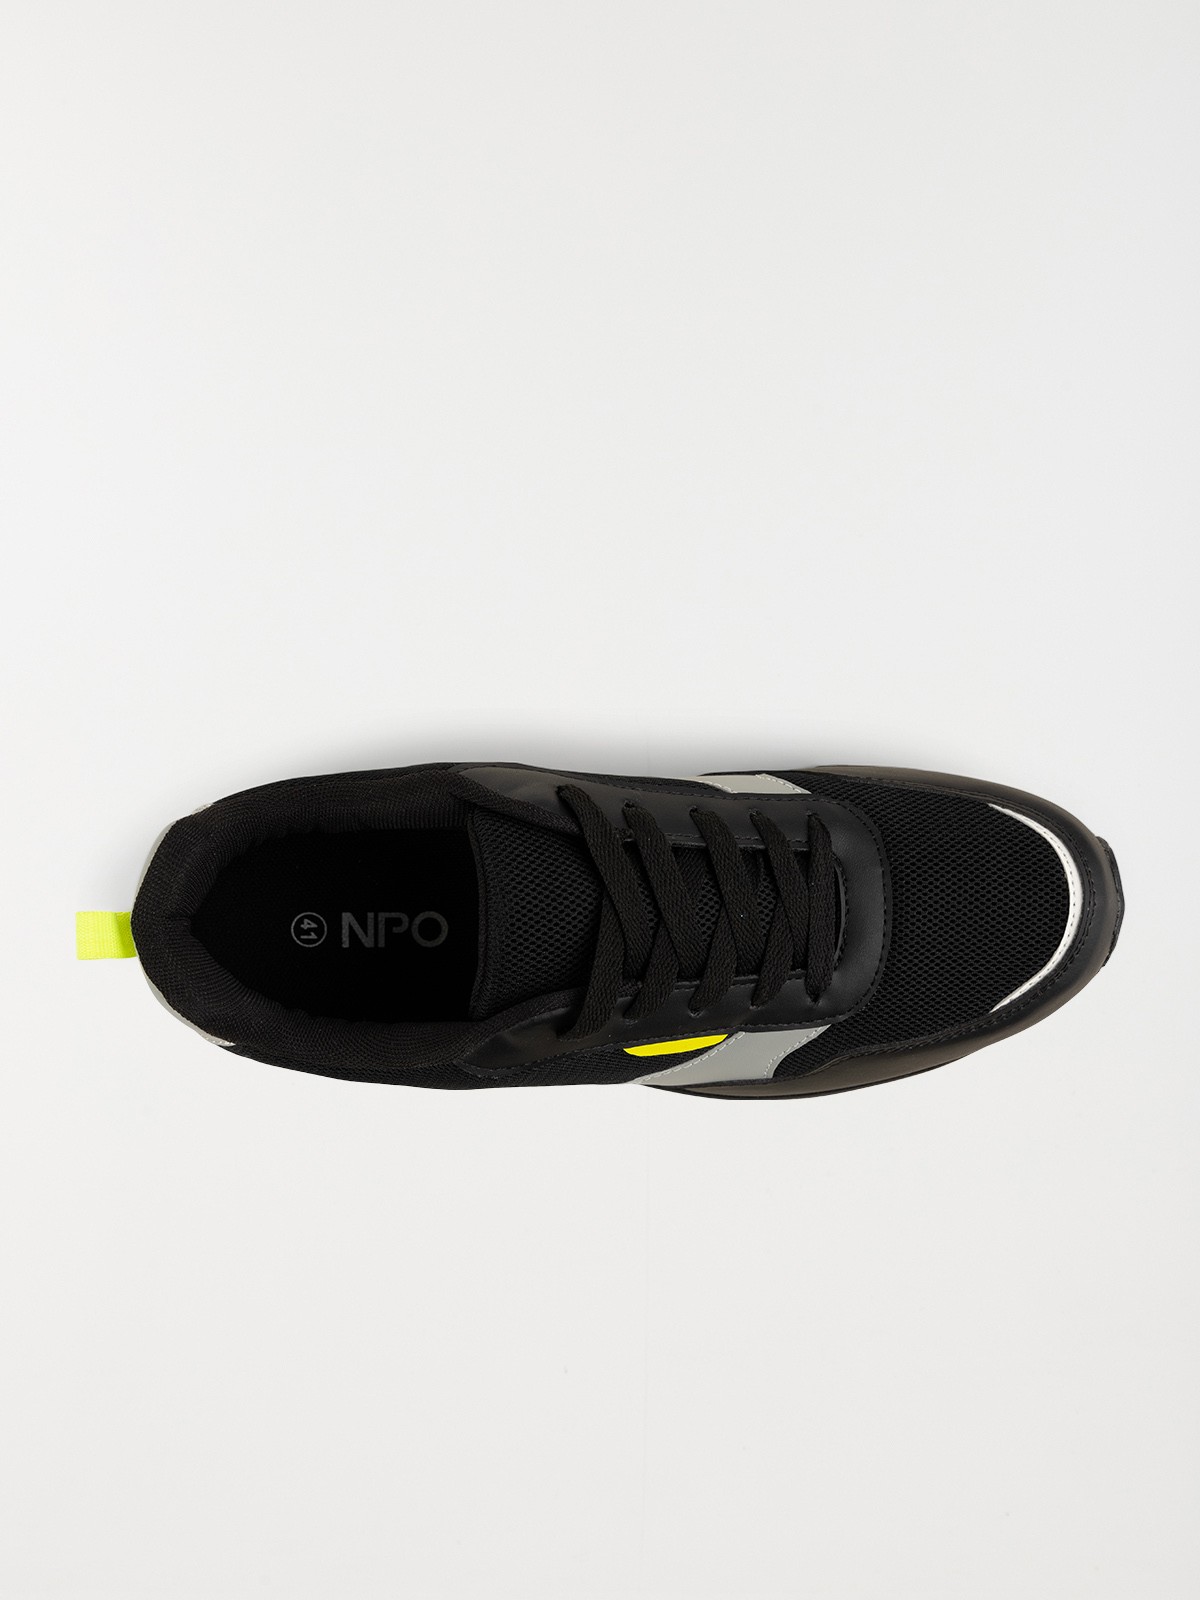 Chaussures de sport homme noir (40-46) - DistriCenter